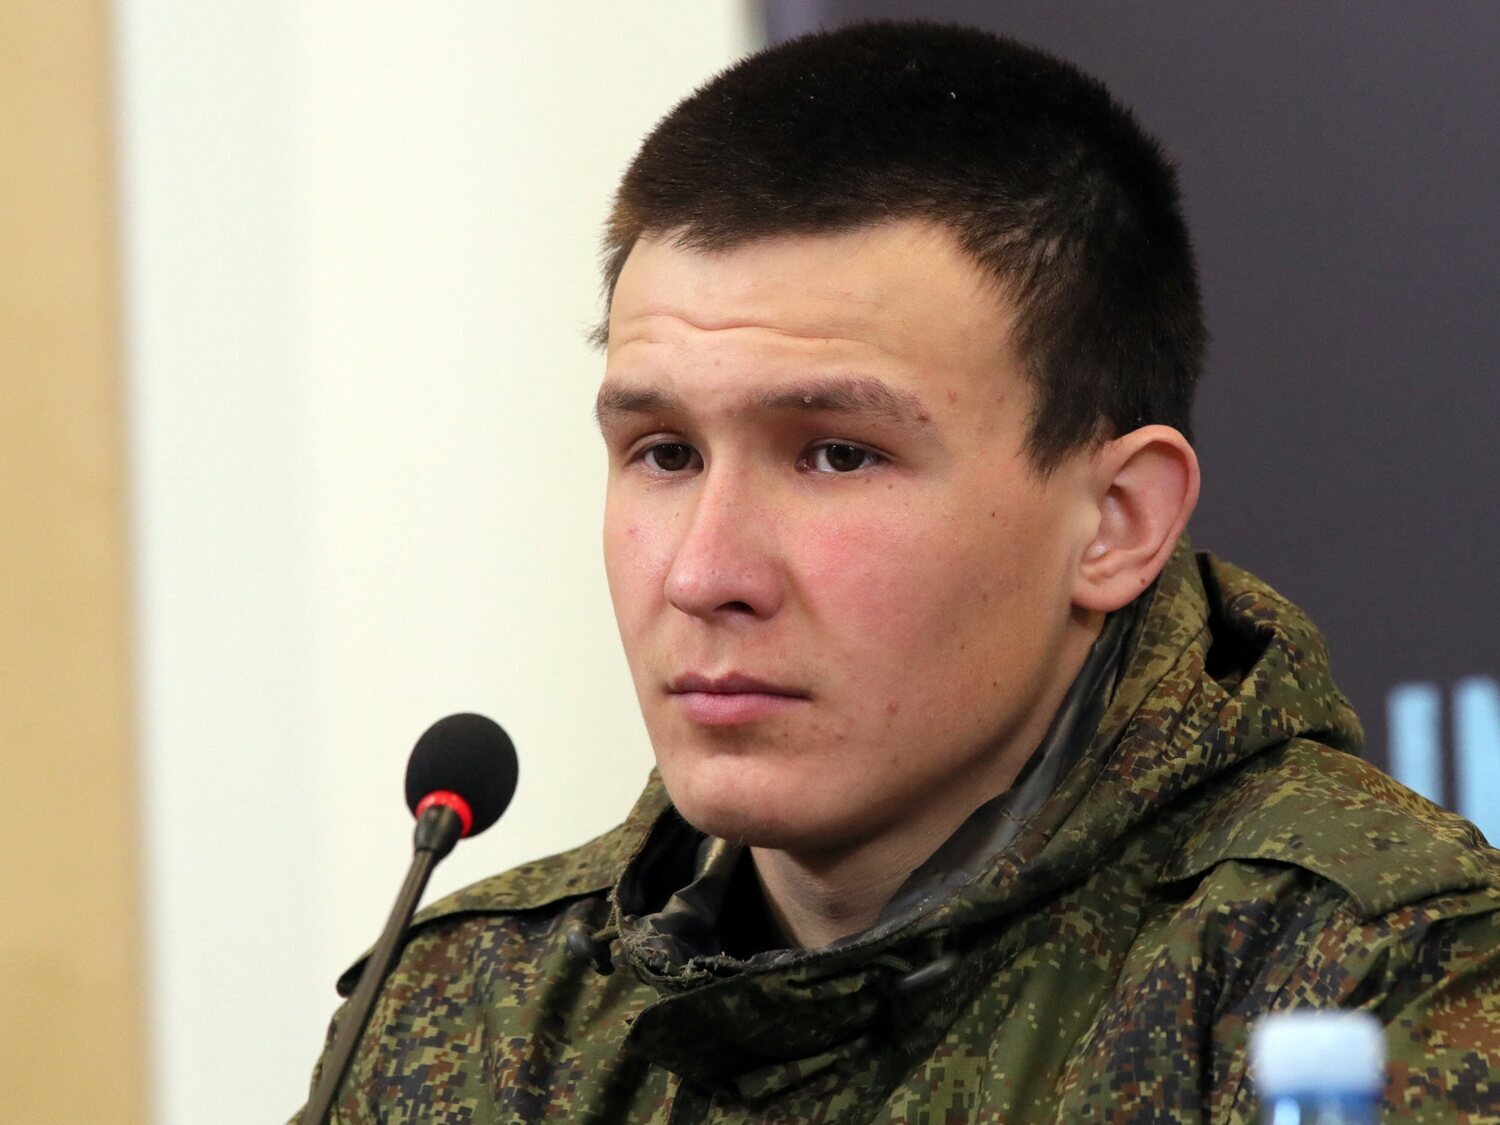 Varios soldados rusos arrestados en Ucrania critican la guerra: "Putin solo dijo mentiras"